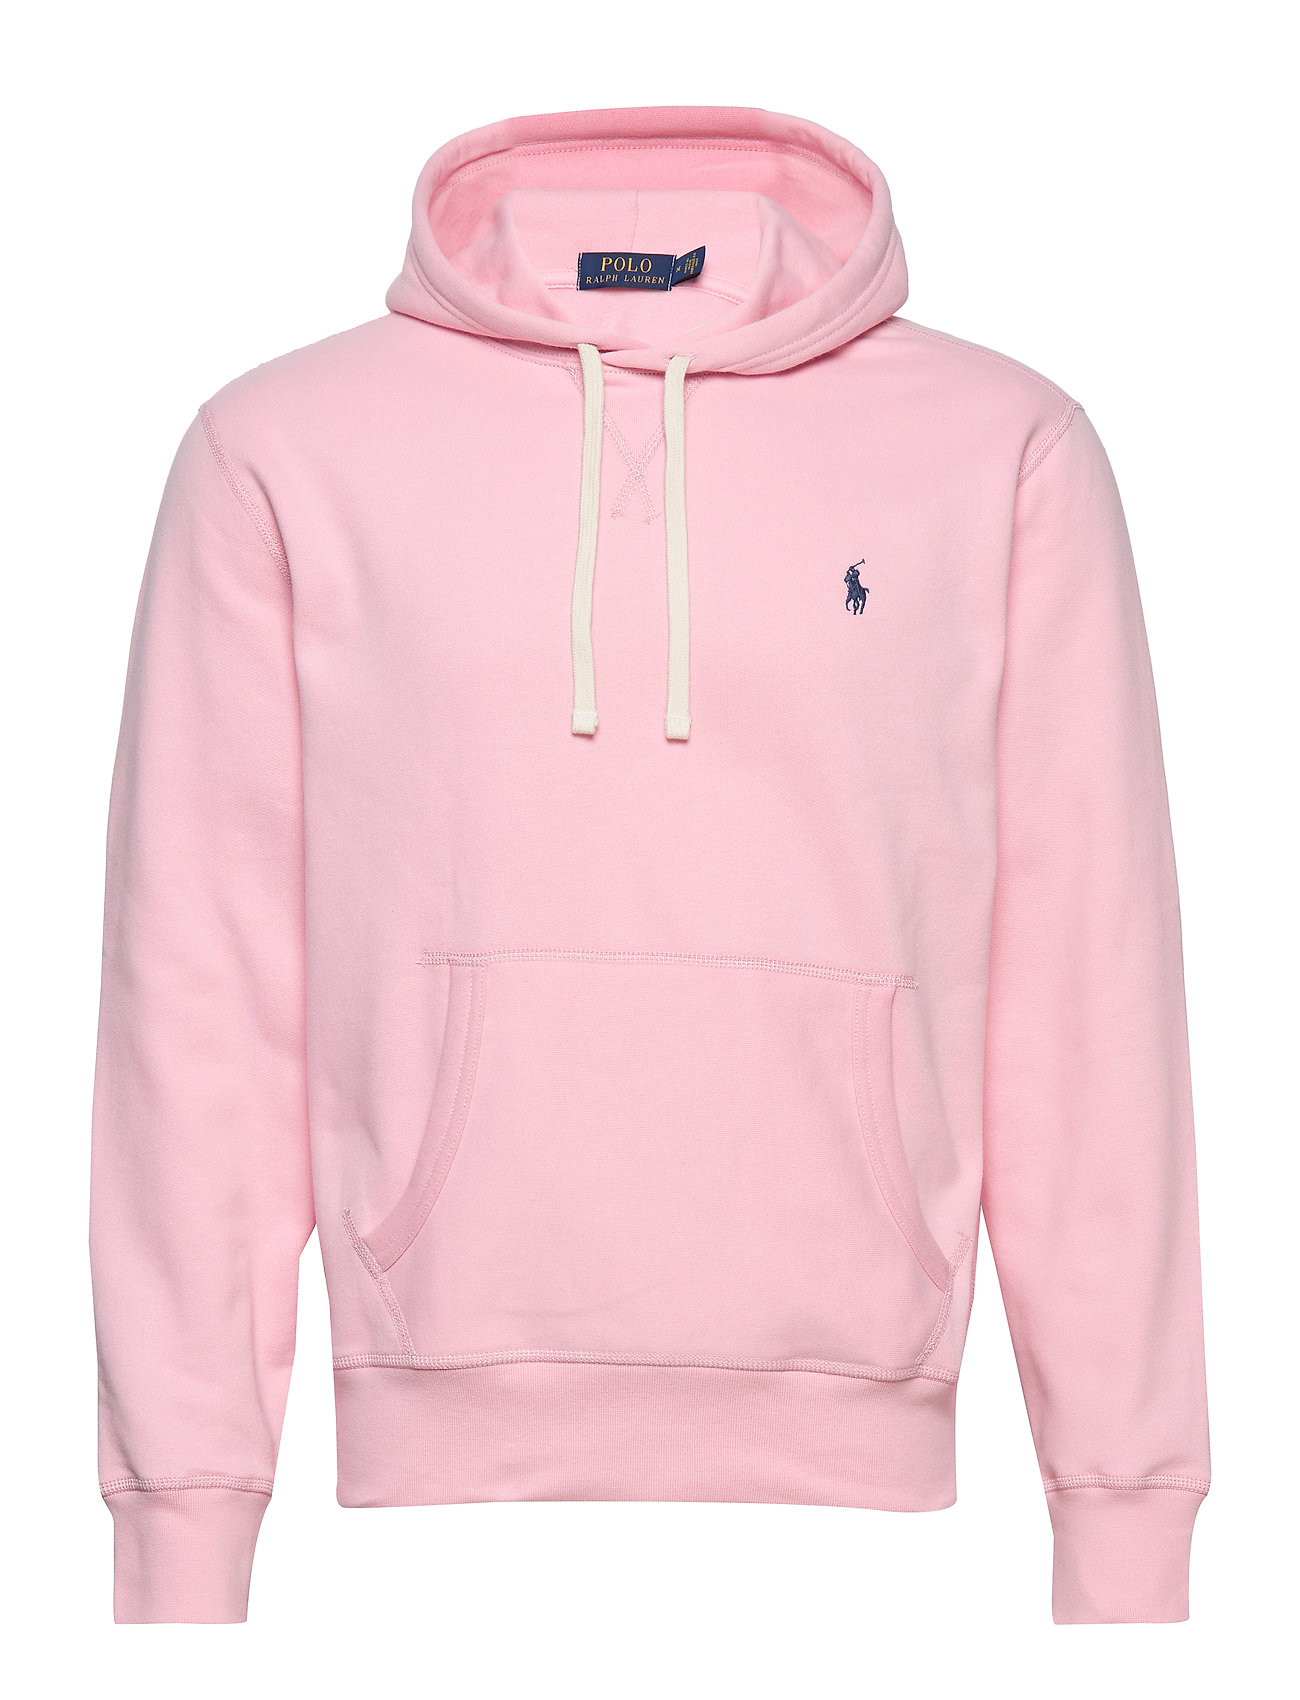 polo ralph lauren pink hoodie